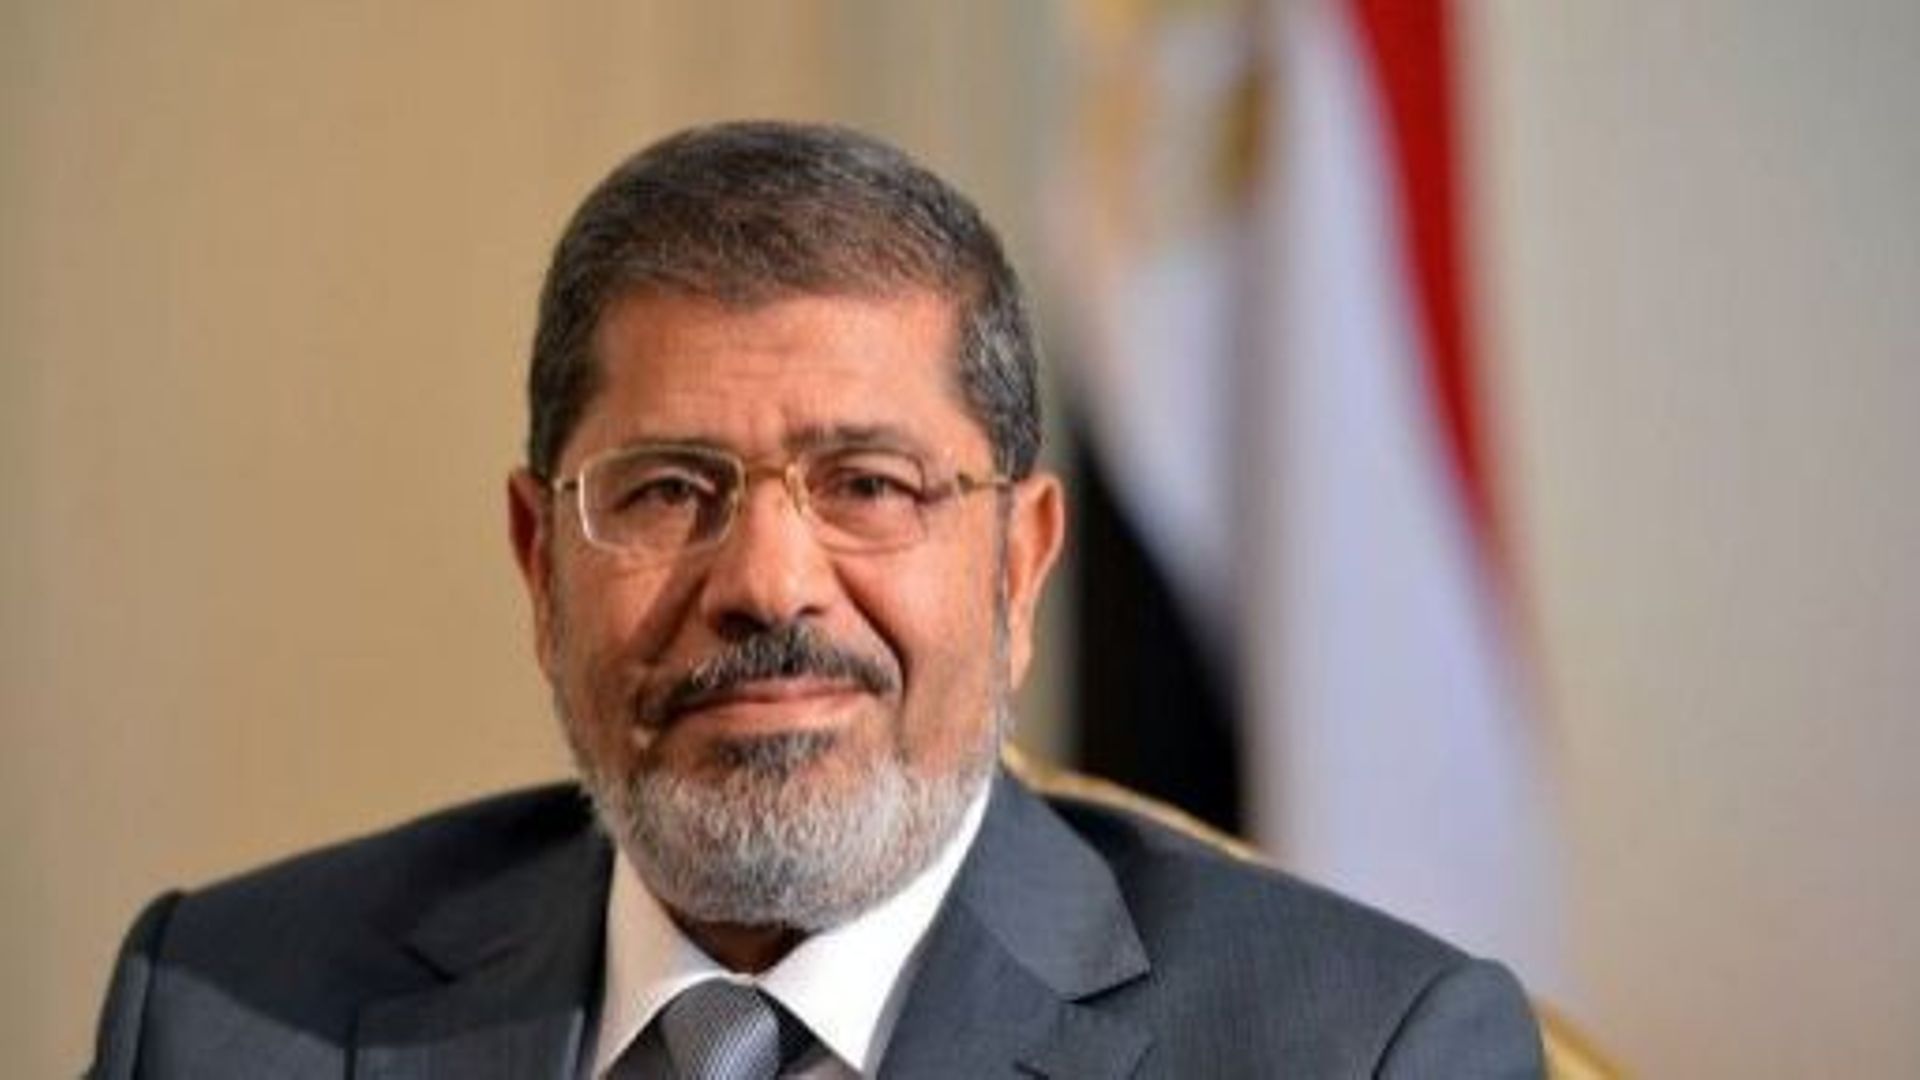 Le président égyptien Mohamed Morsi pose le 8 juillet 2012 au Caire